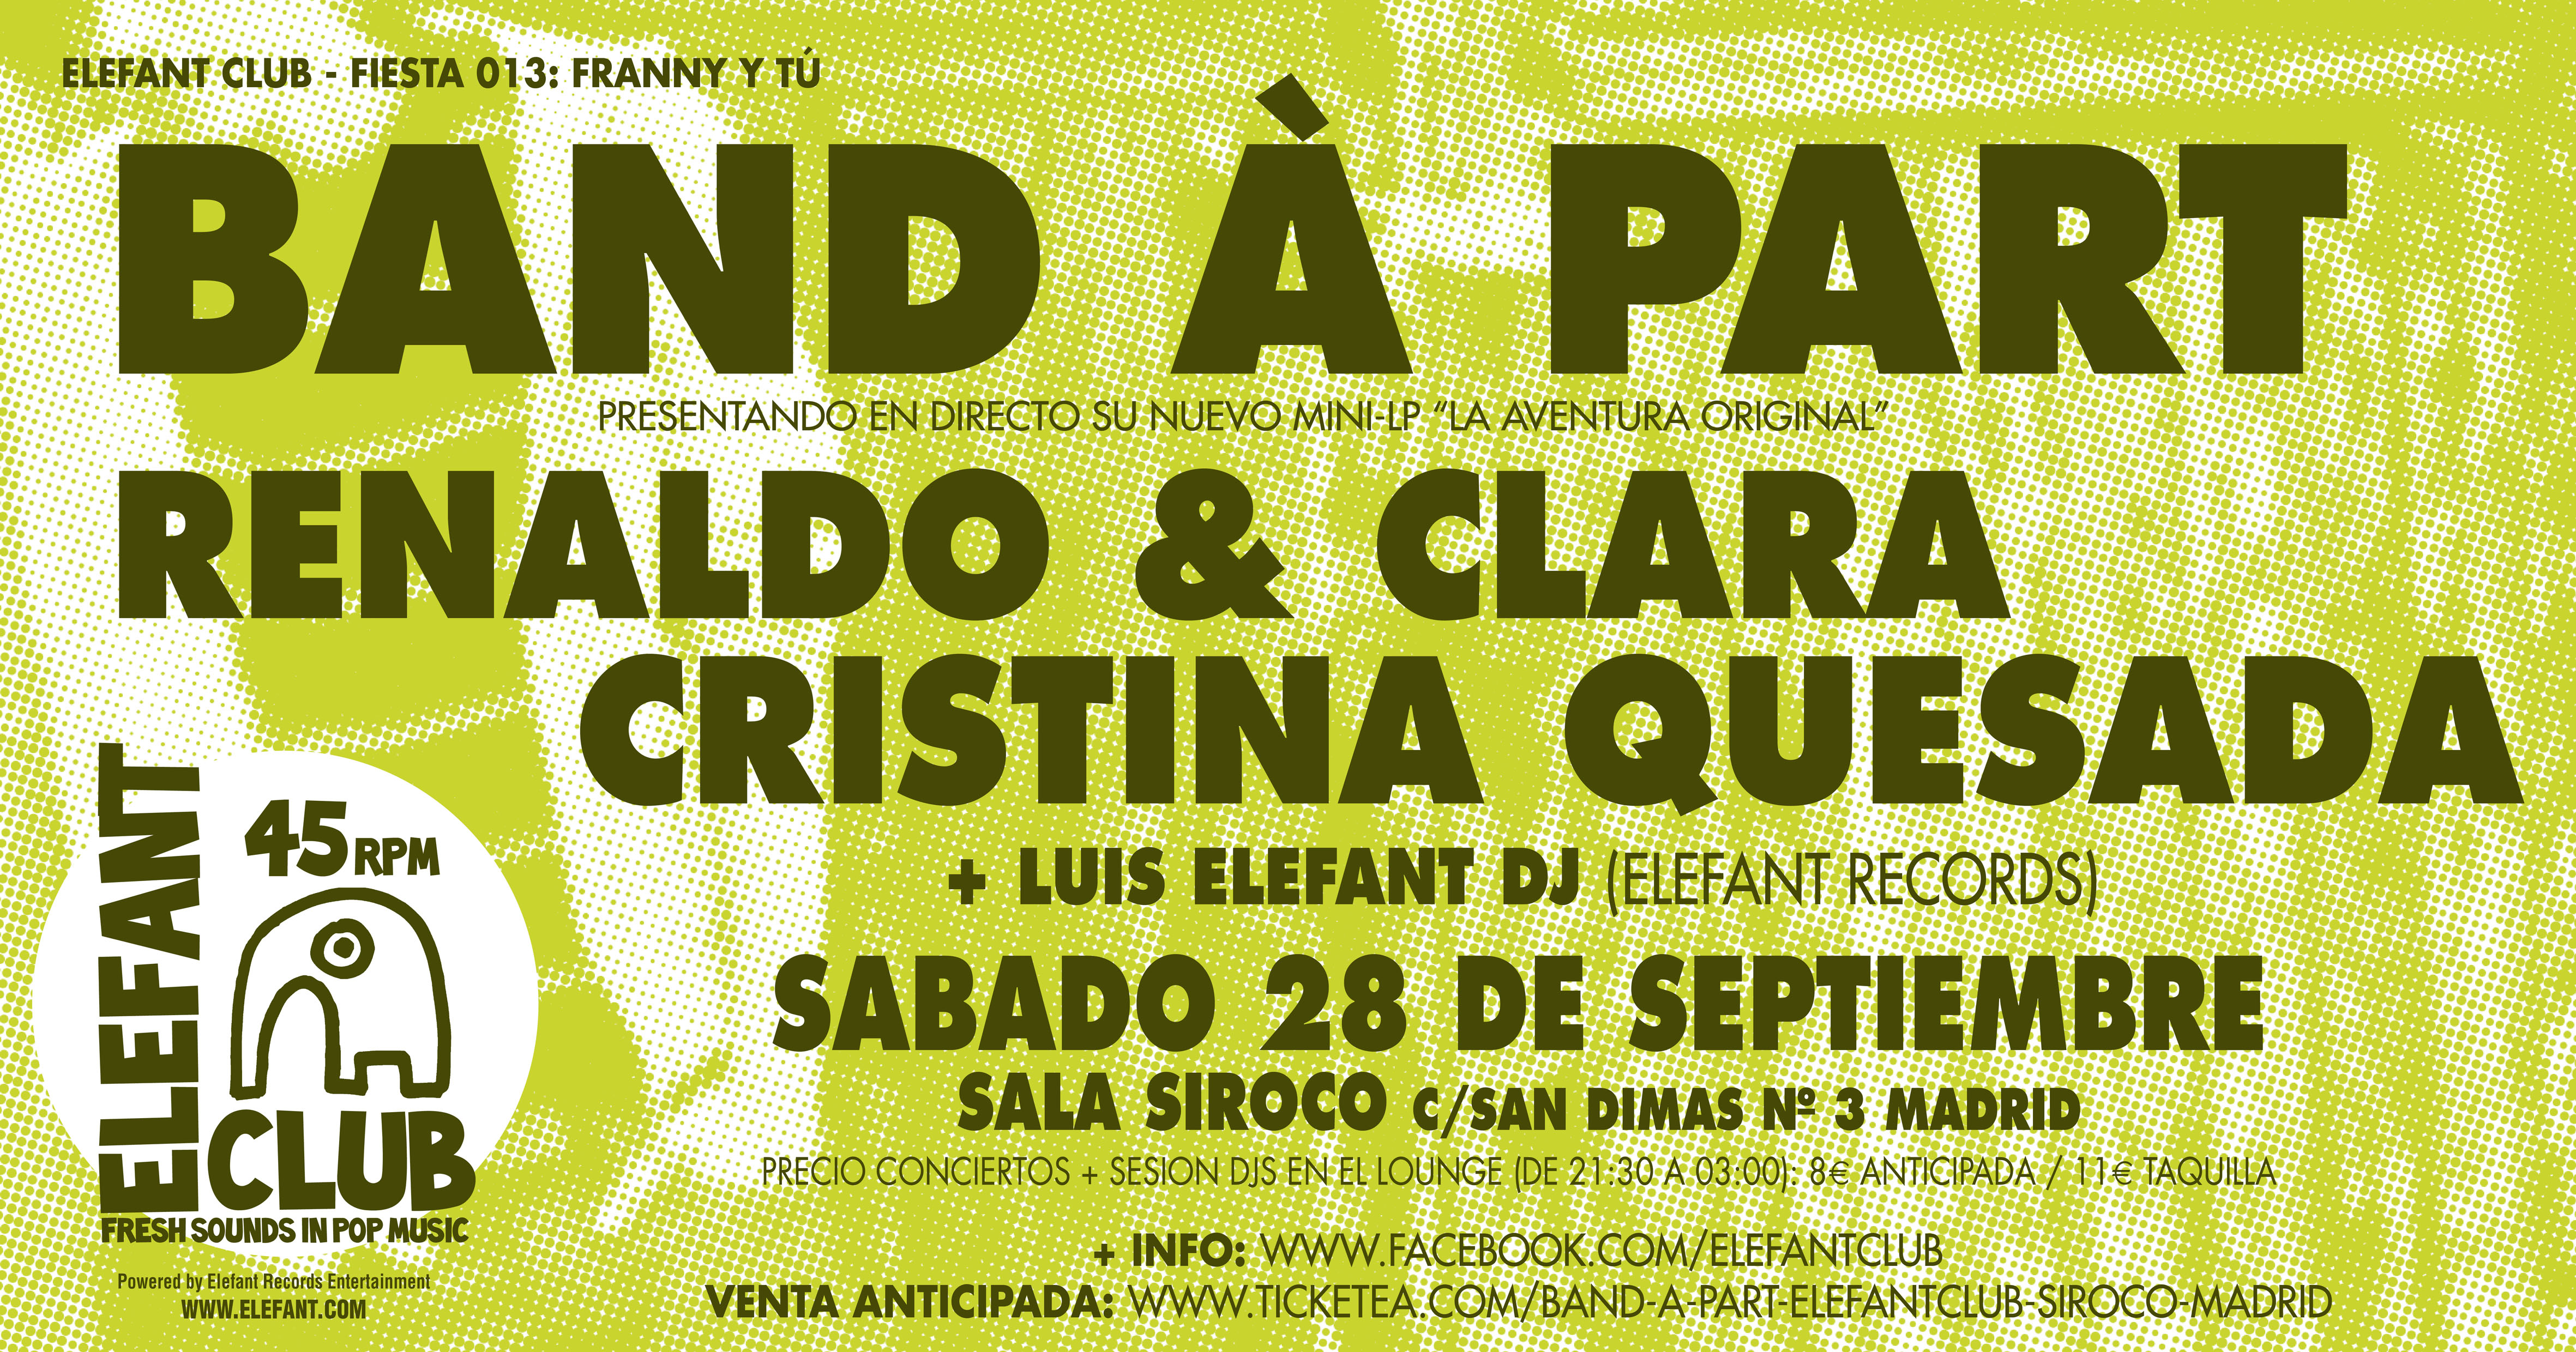 Flyer Fiesta Elefant Club 013: Franny y Tú